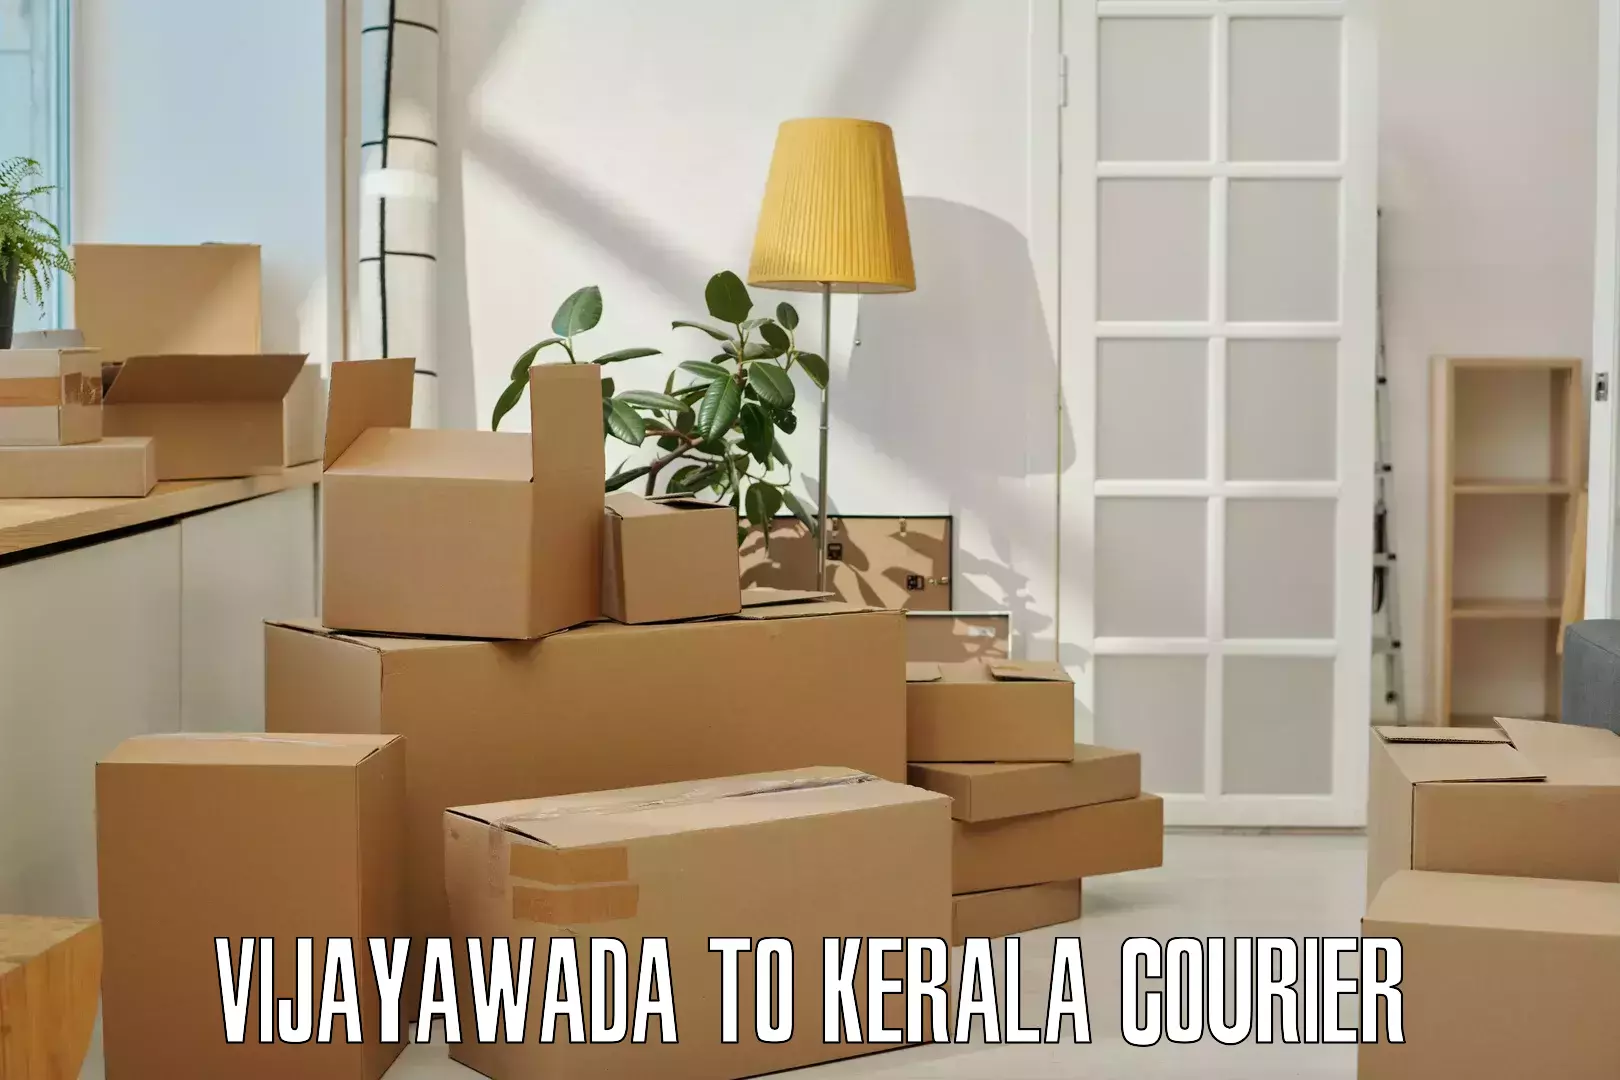 Express courier capabilities Vijayawada to Nallepilly